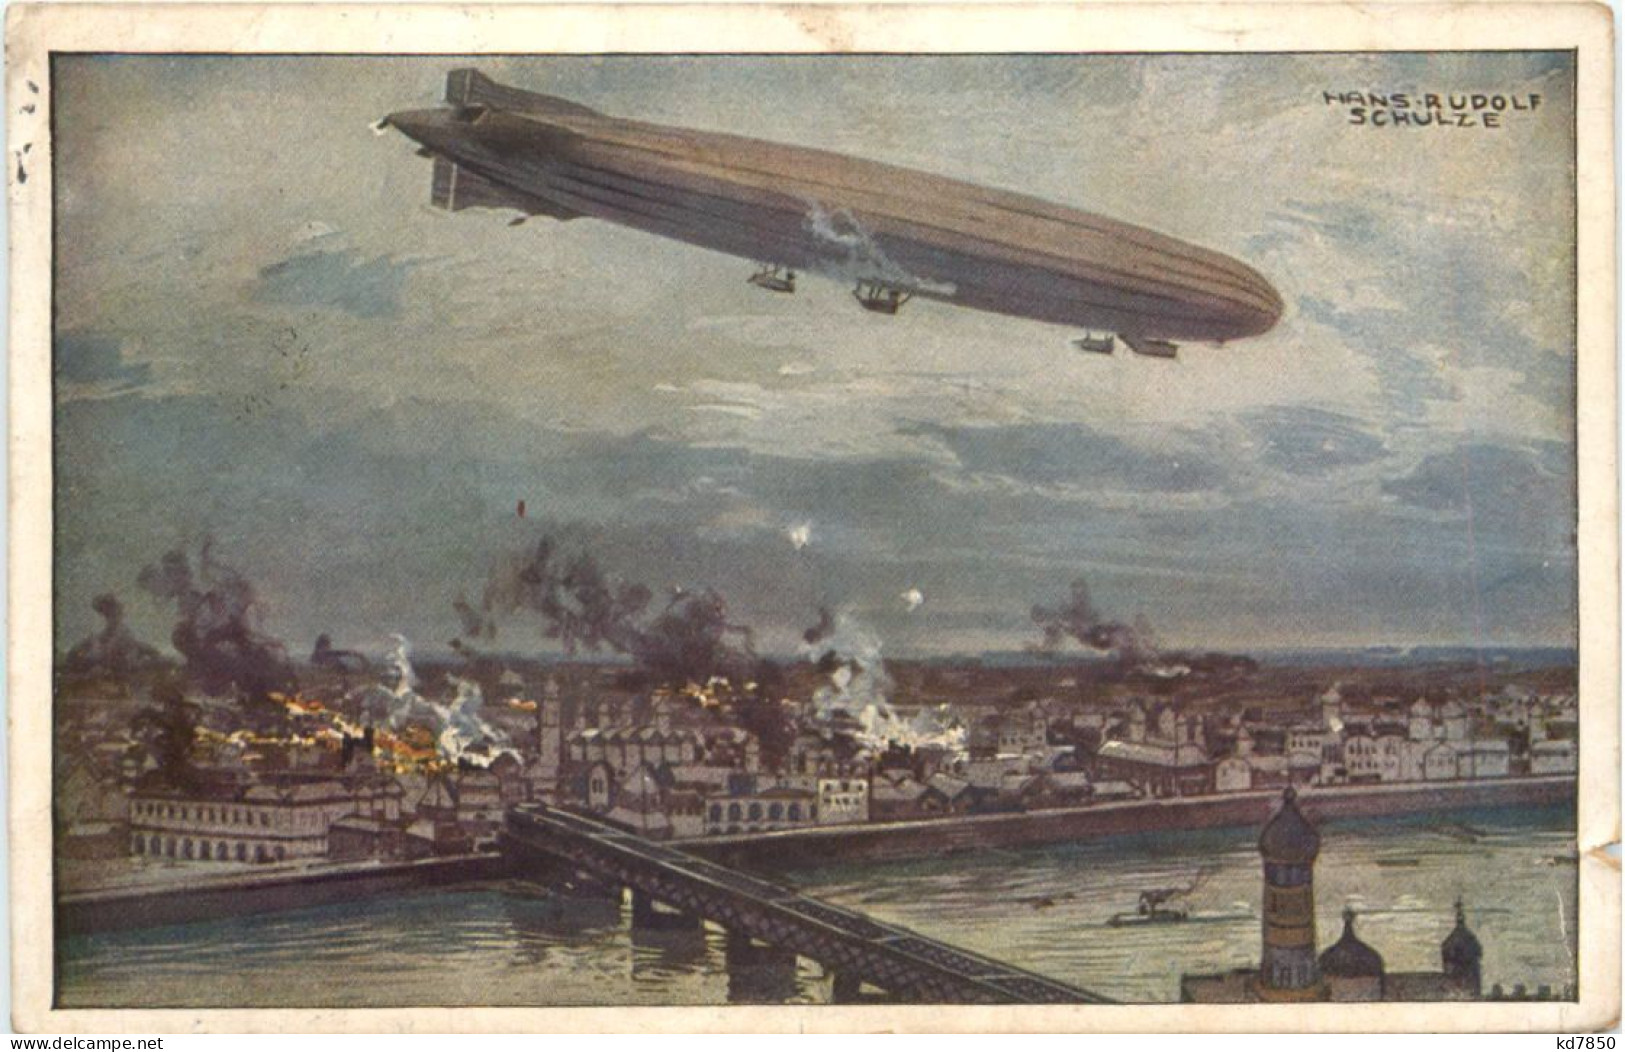 Zeppelin - Zeppeline